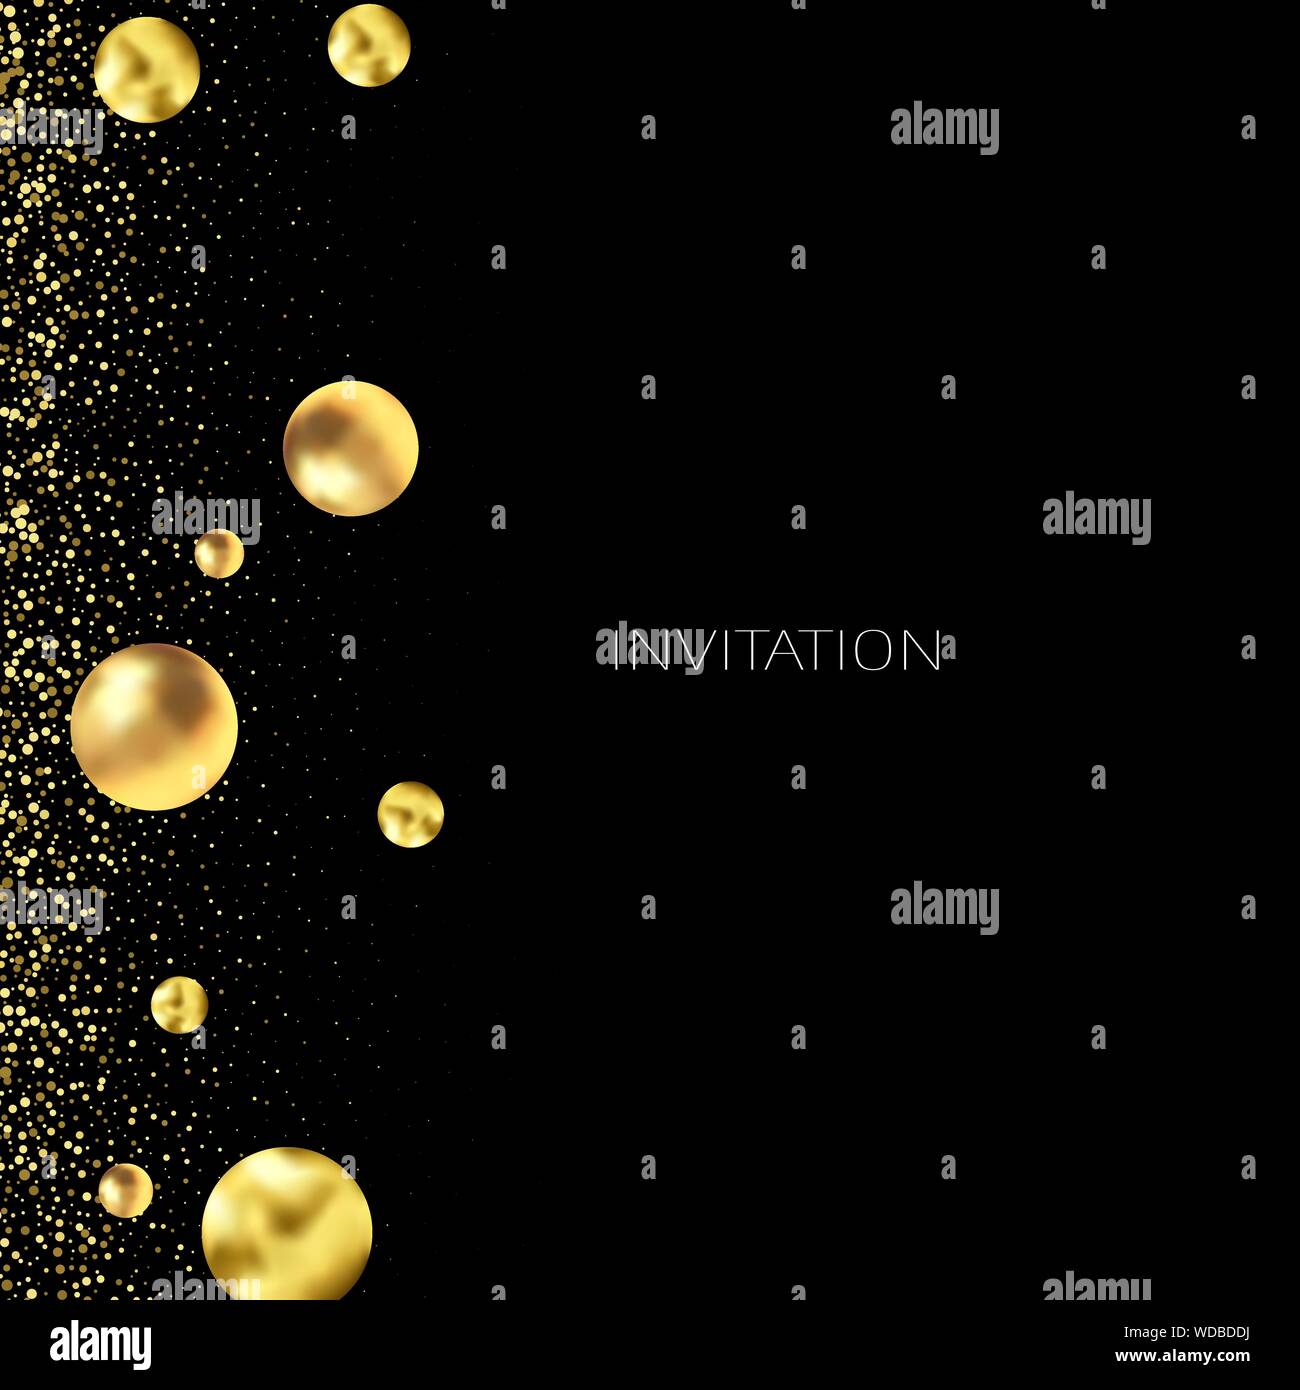 Gold Glitzer Hintergrund mit Glanz Licht Konfetti. Vektor glitzernden schwarzen Hintergrund. Golden schimmernde Textur für Luxus Hintergrund Design. Stock Vektor